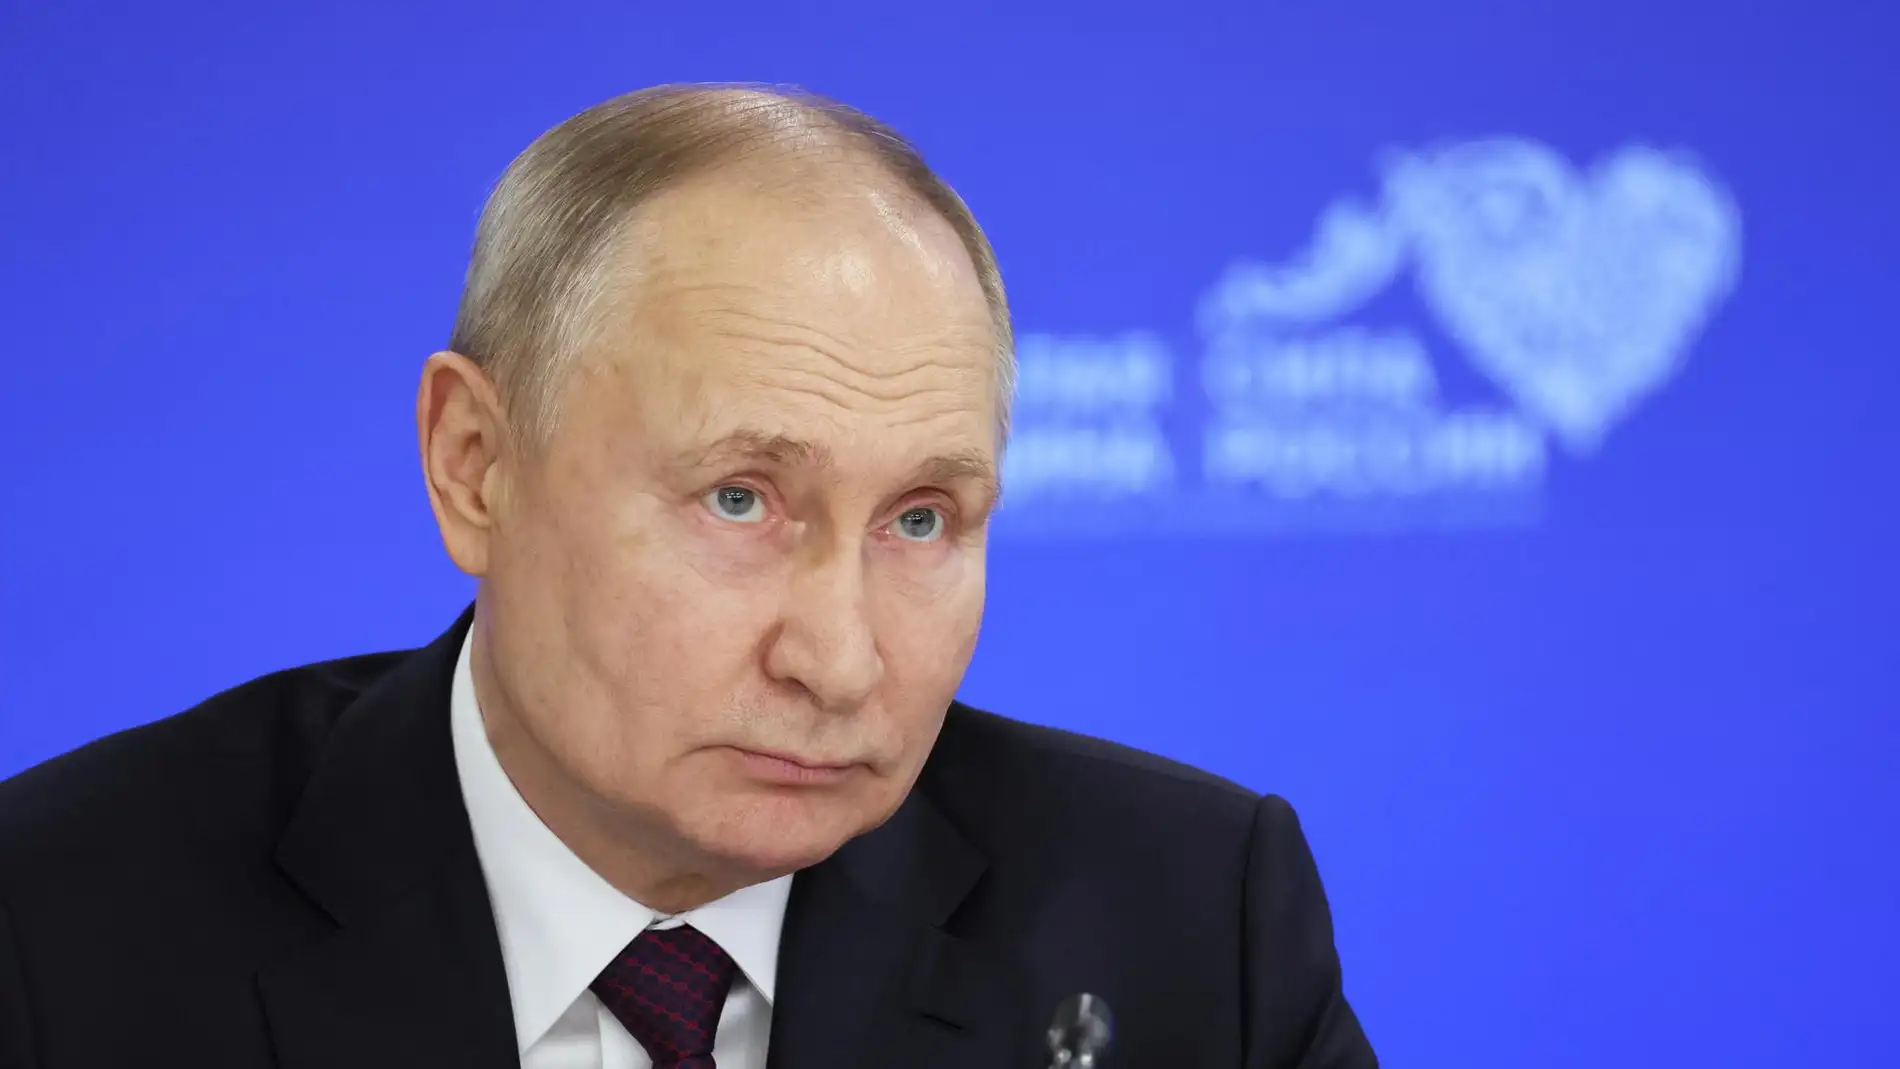 Putin asegura que las elecciones de EEUU fueron fraudulentas y hubo compra de votos por correo